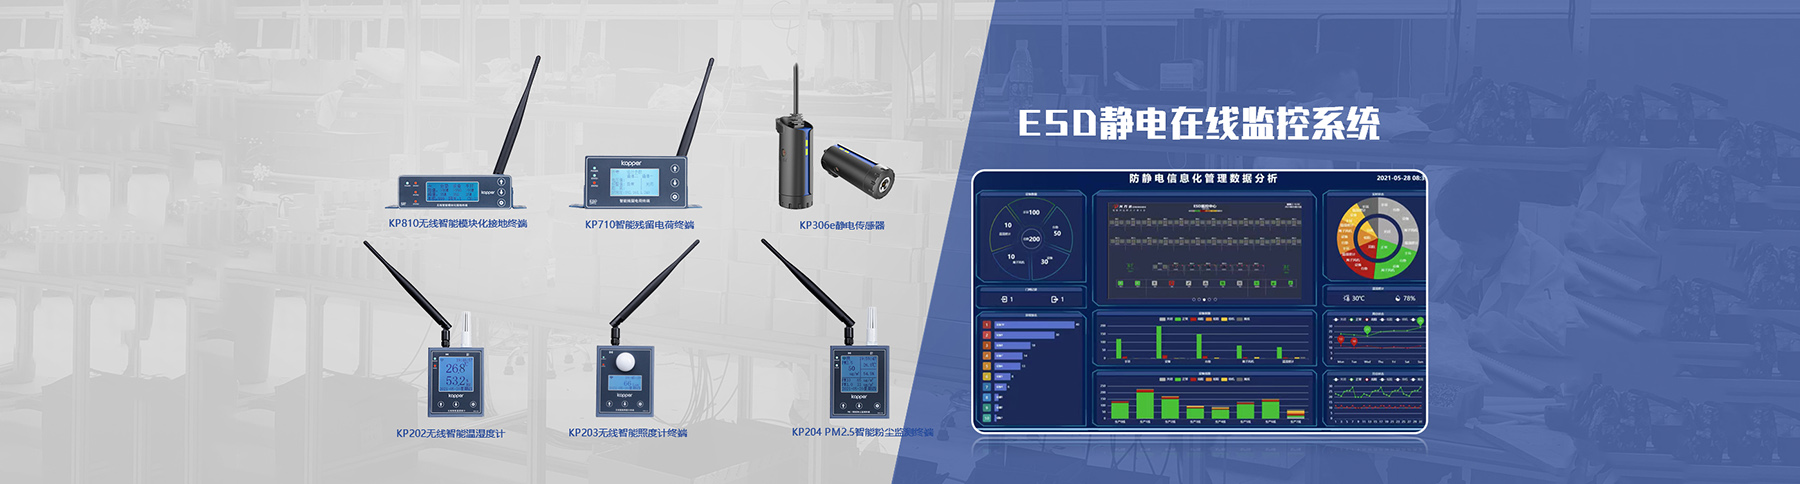 ESD静电监控系统